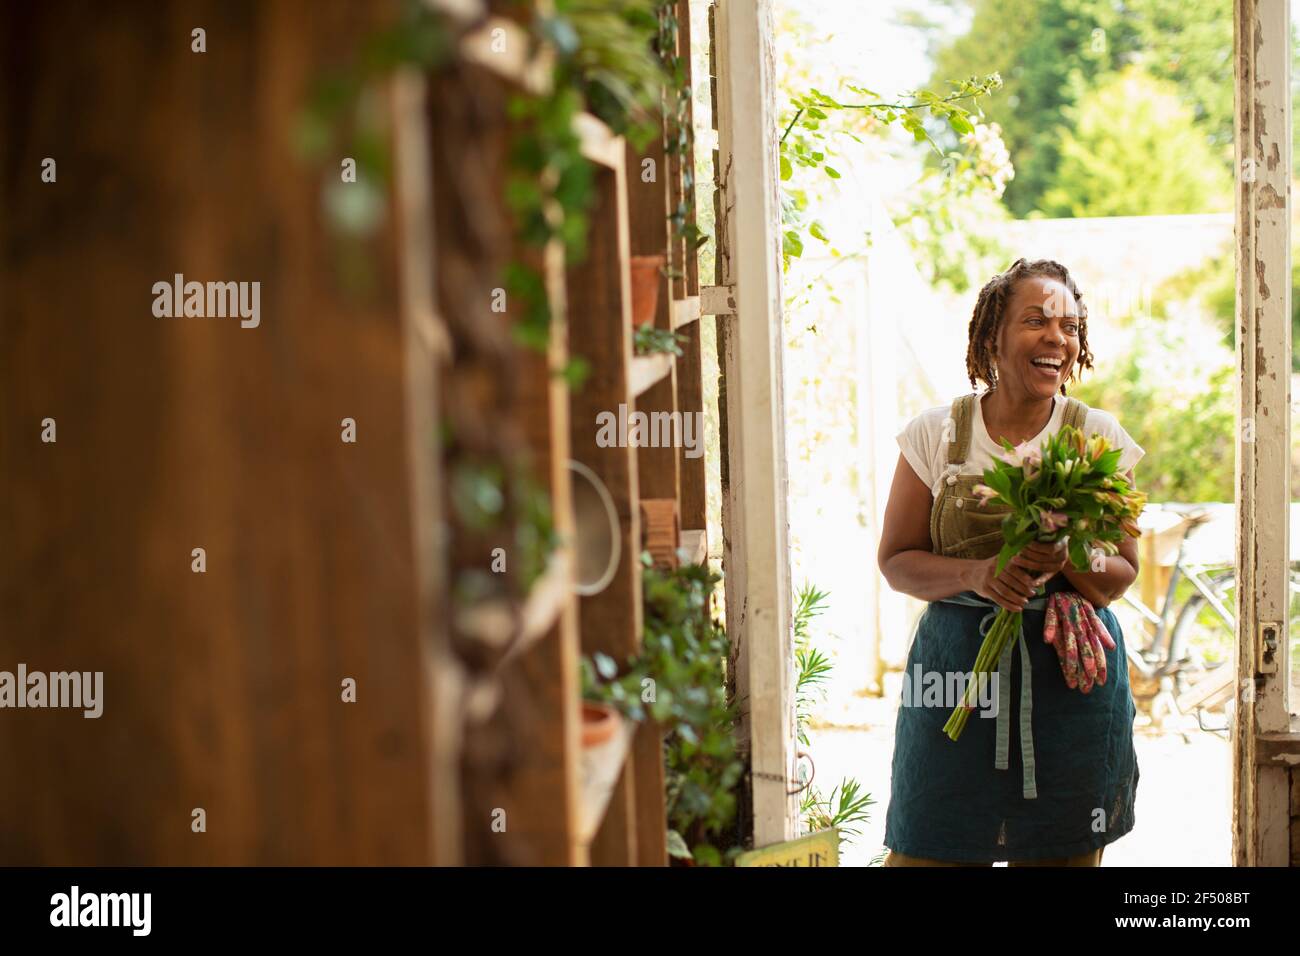 Glückliche weibliche Floristin mit Blumenstrauß in Shop Eingang Stockfoto